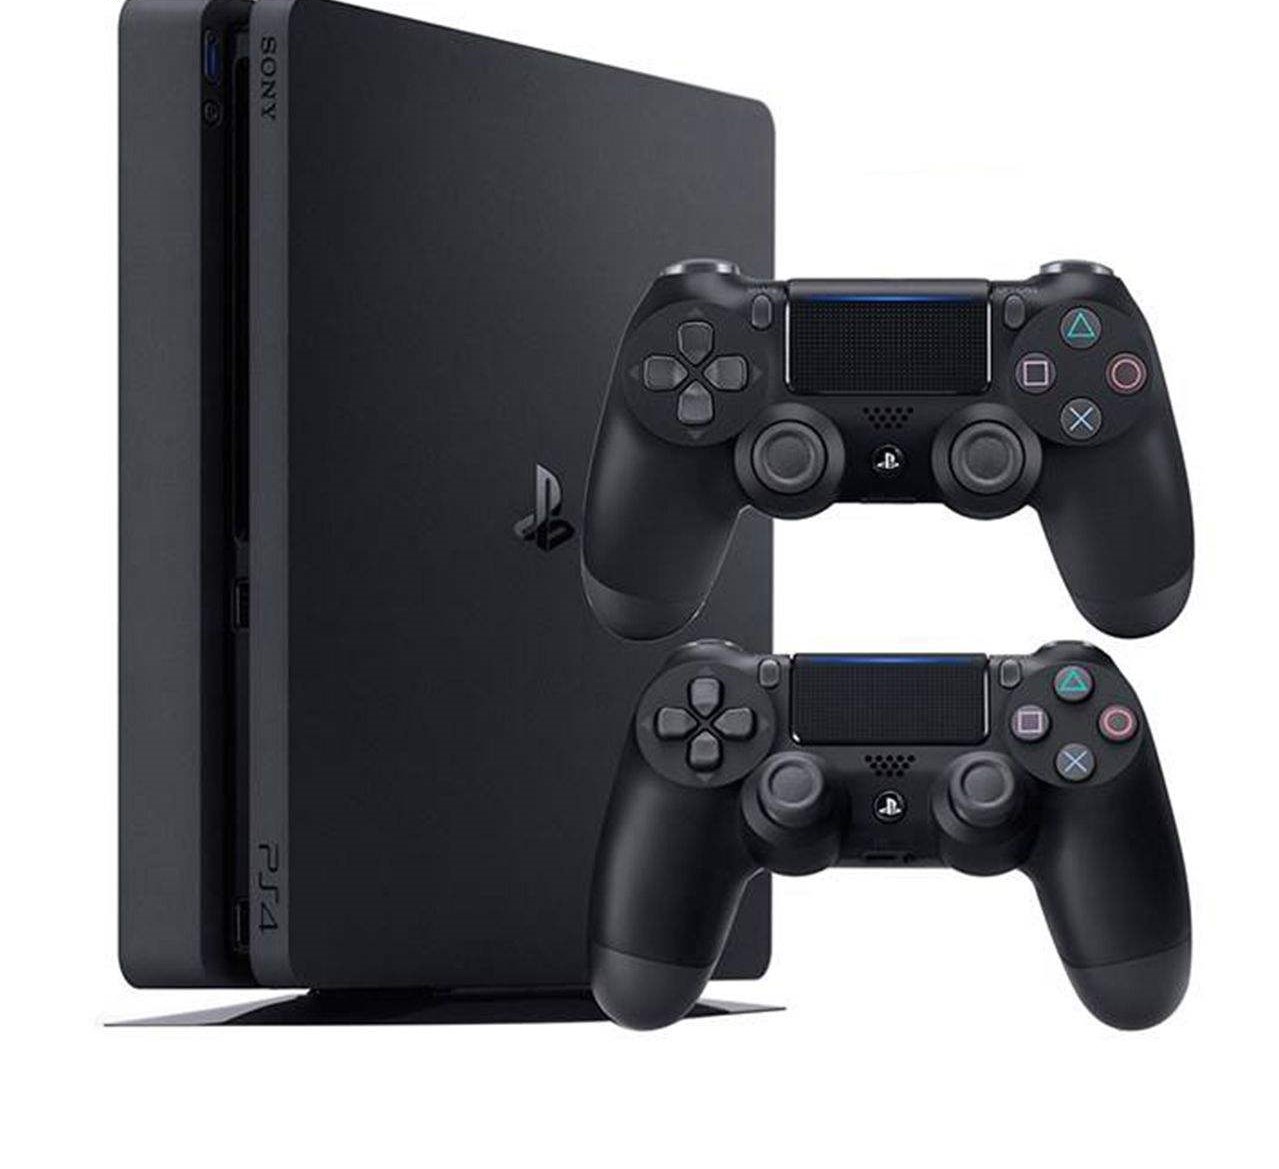 کنسول بازی سونی Sony مدل Playstation 4 Slim کد Region 2 CUH-2216A - ظرفیت 500 گیگابایت